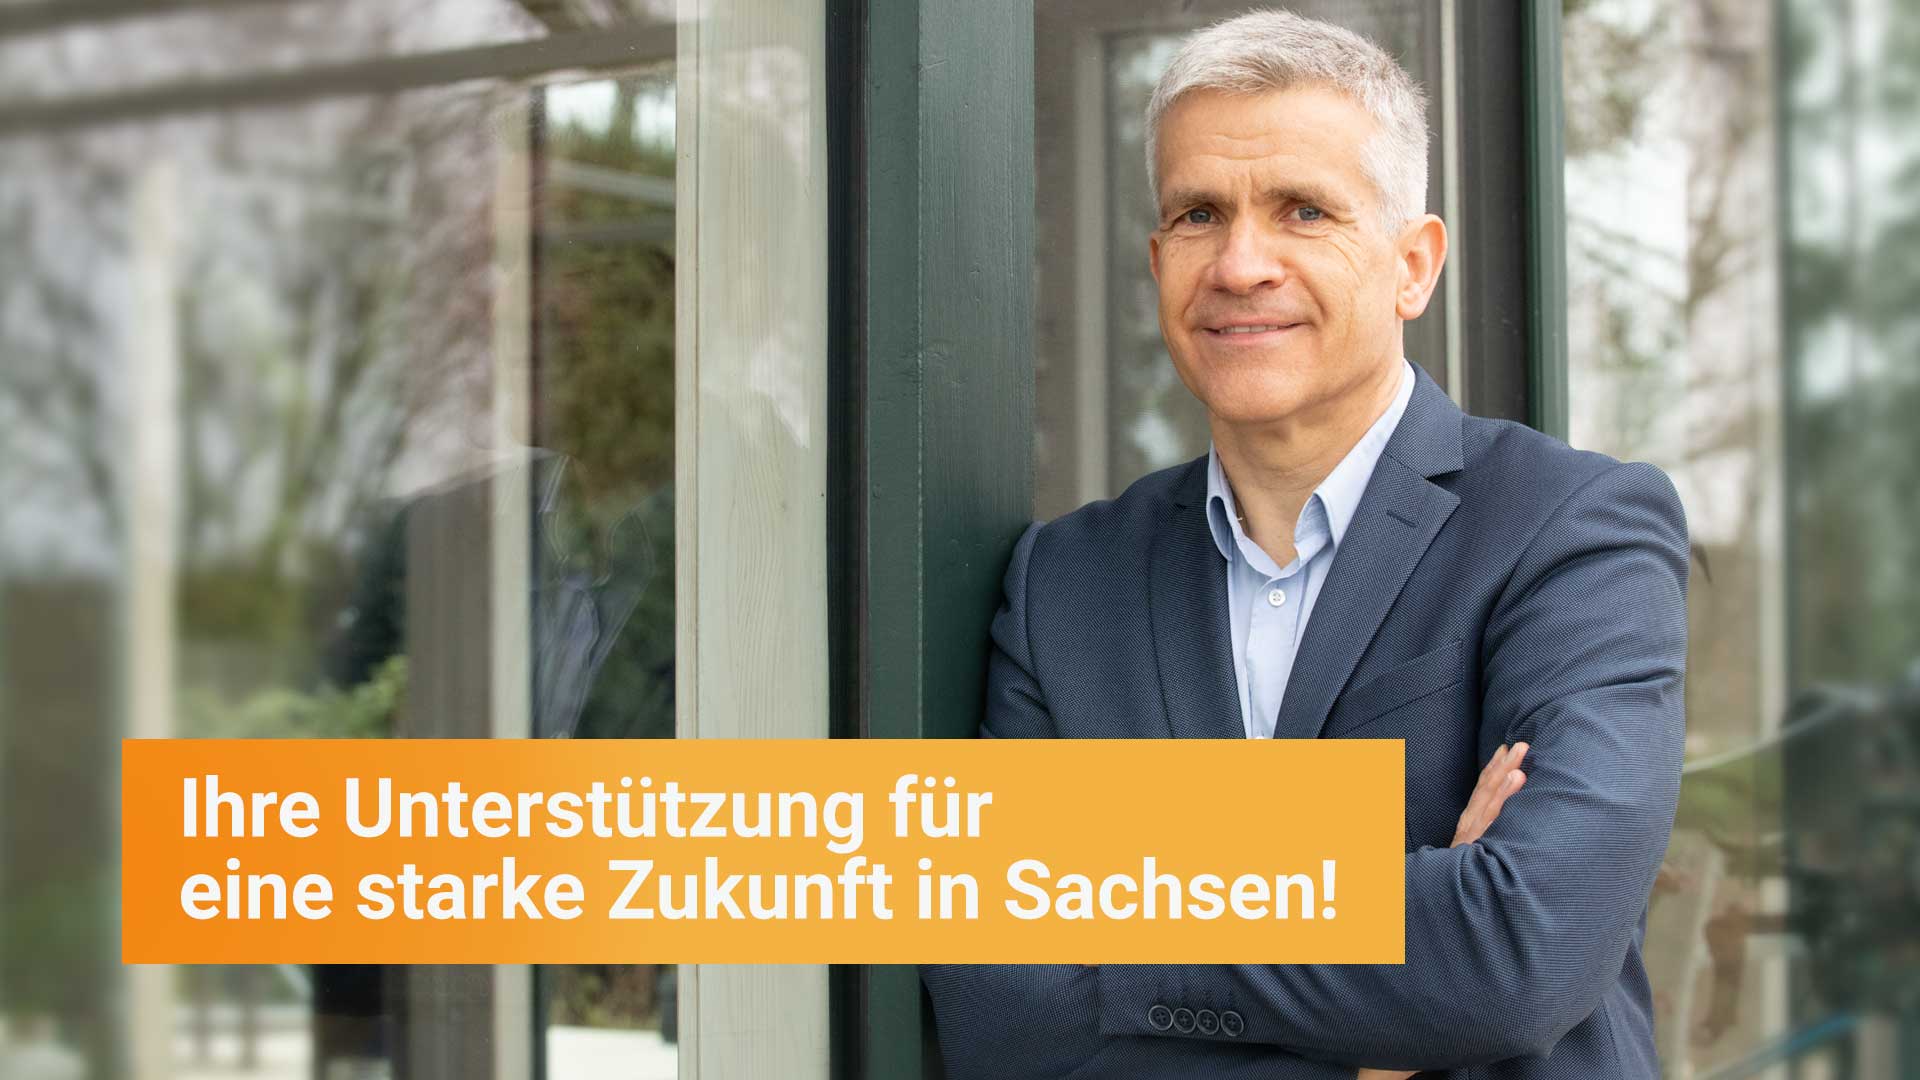 Matthias Berger, Freie Wähler Sachen - Ihre Unterstützung für eine starke Zukunft in Sachsen!